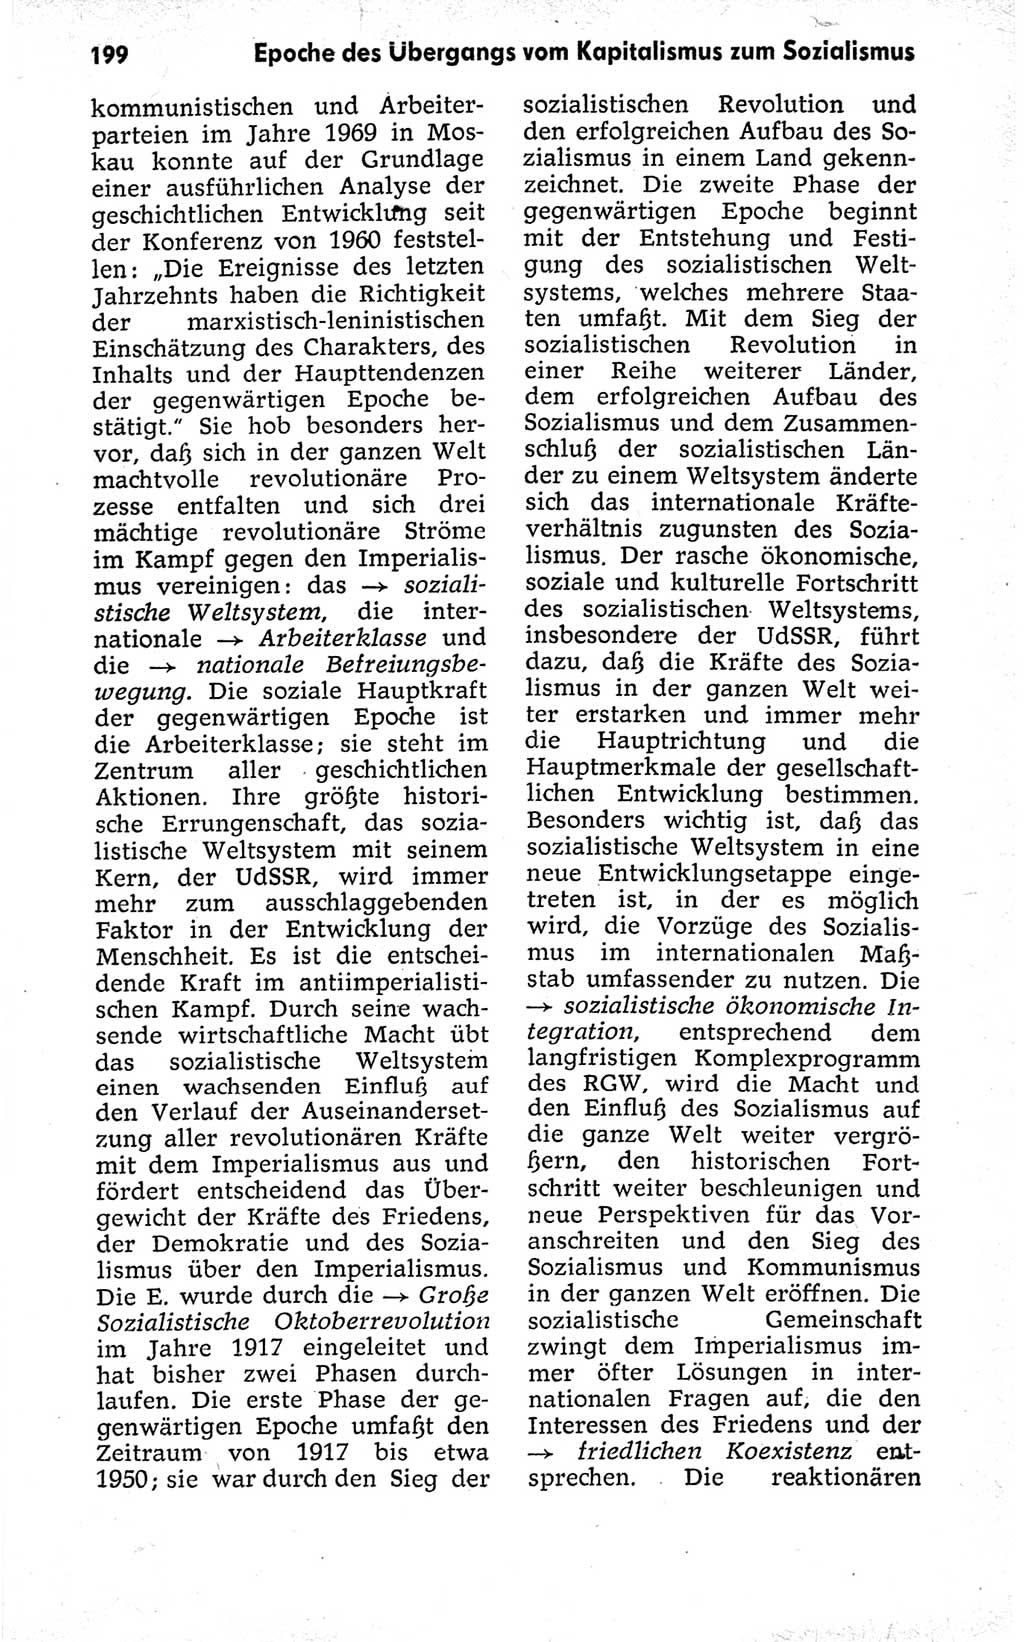 Kleines politisches Wörterbuch [Deutsche Demokratische Republik (DDR)] 1973, Seite 199 (Kl. pol. Wb. DDR 1973, S. 199)